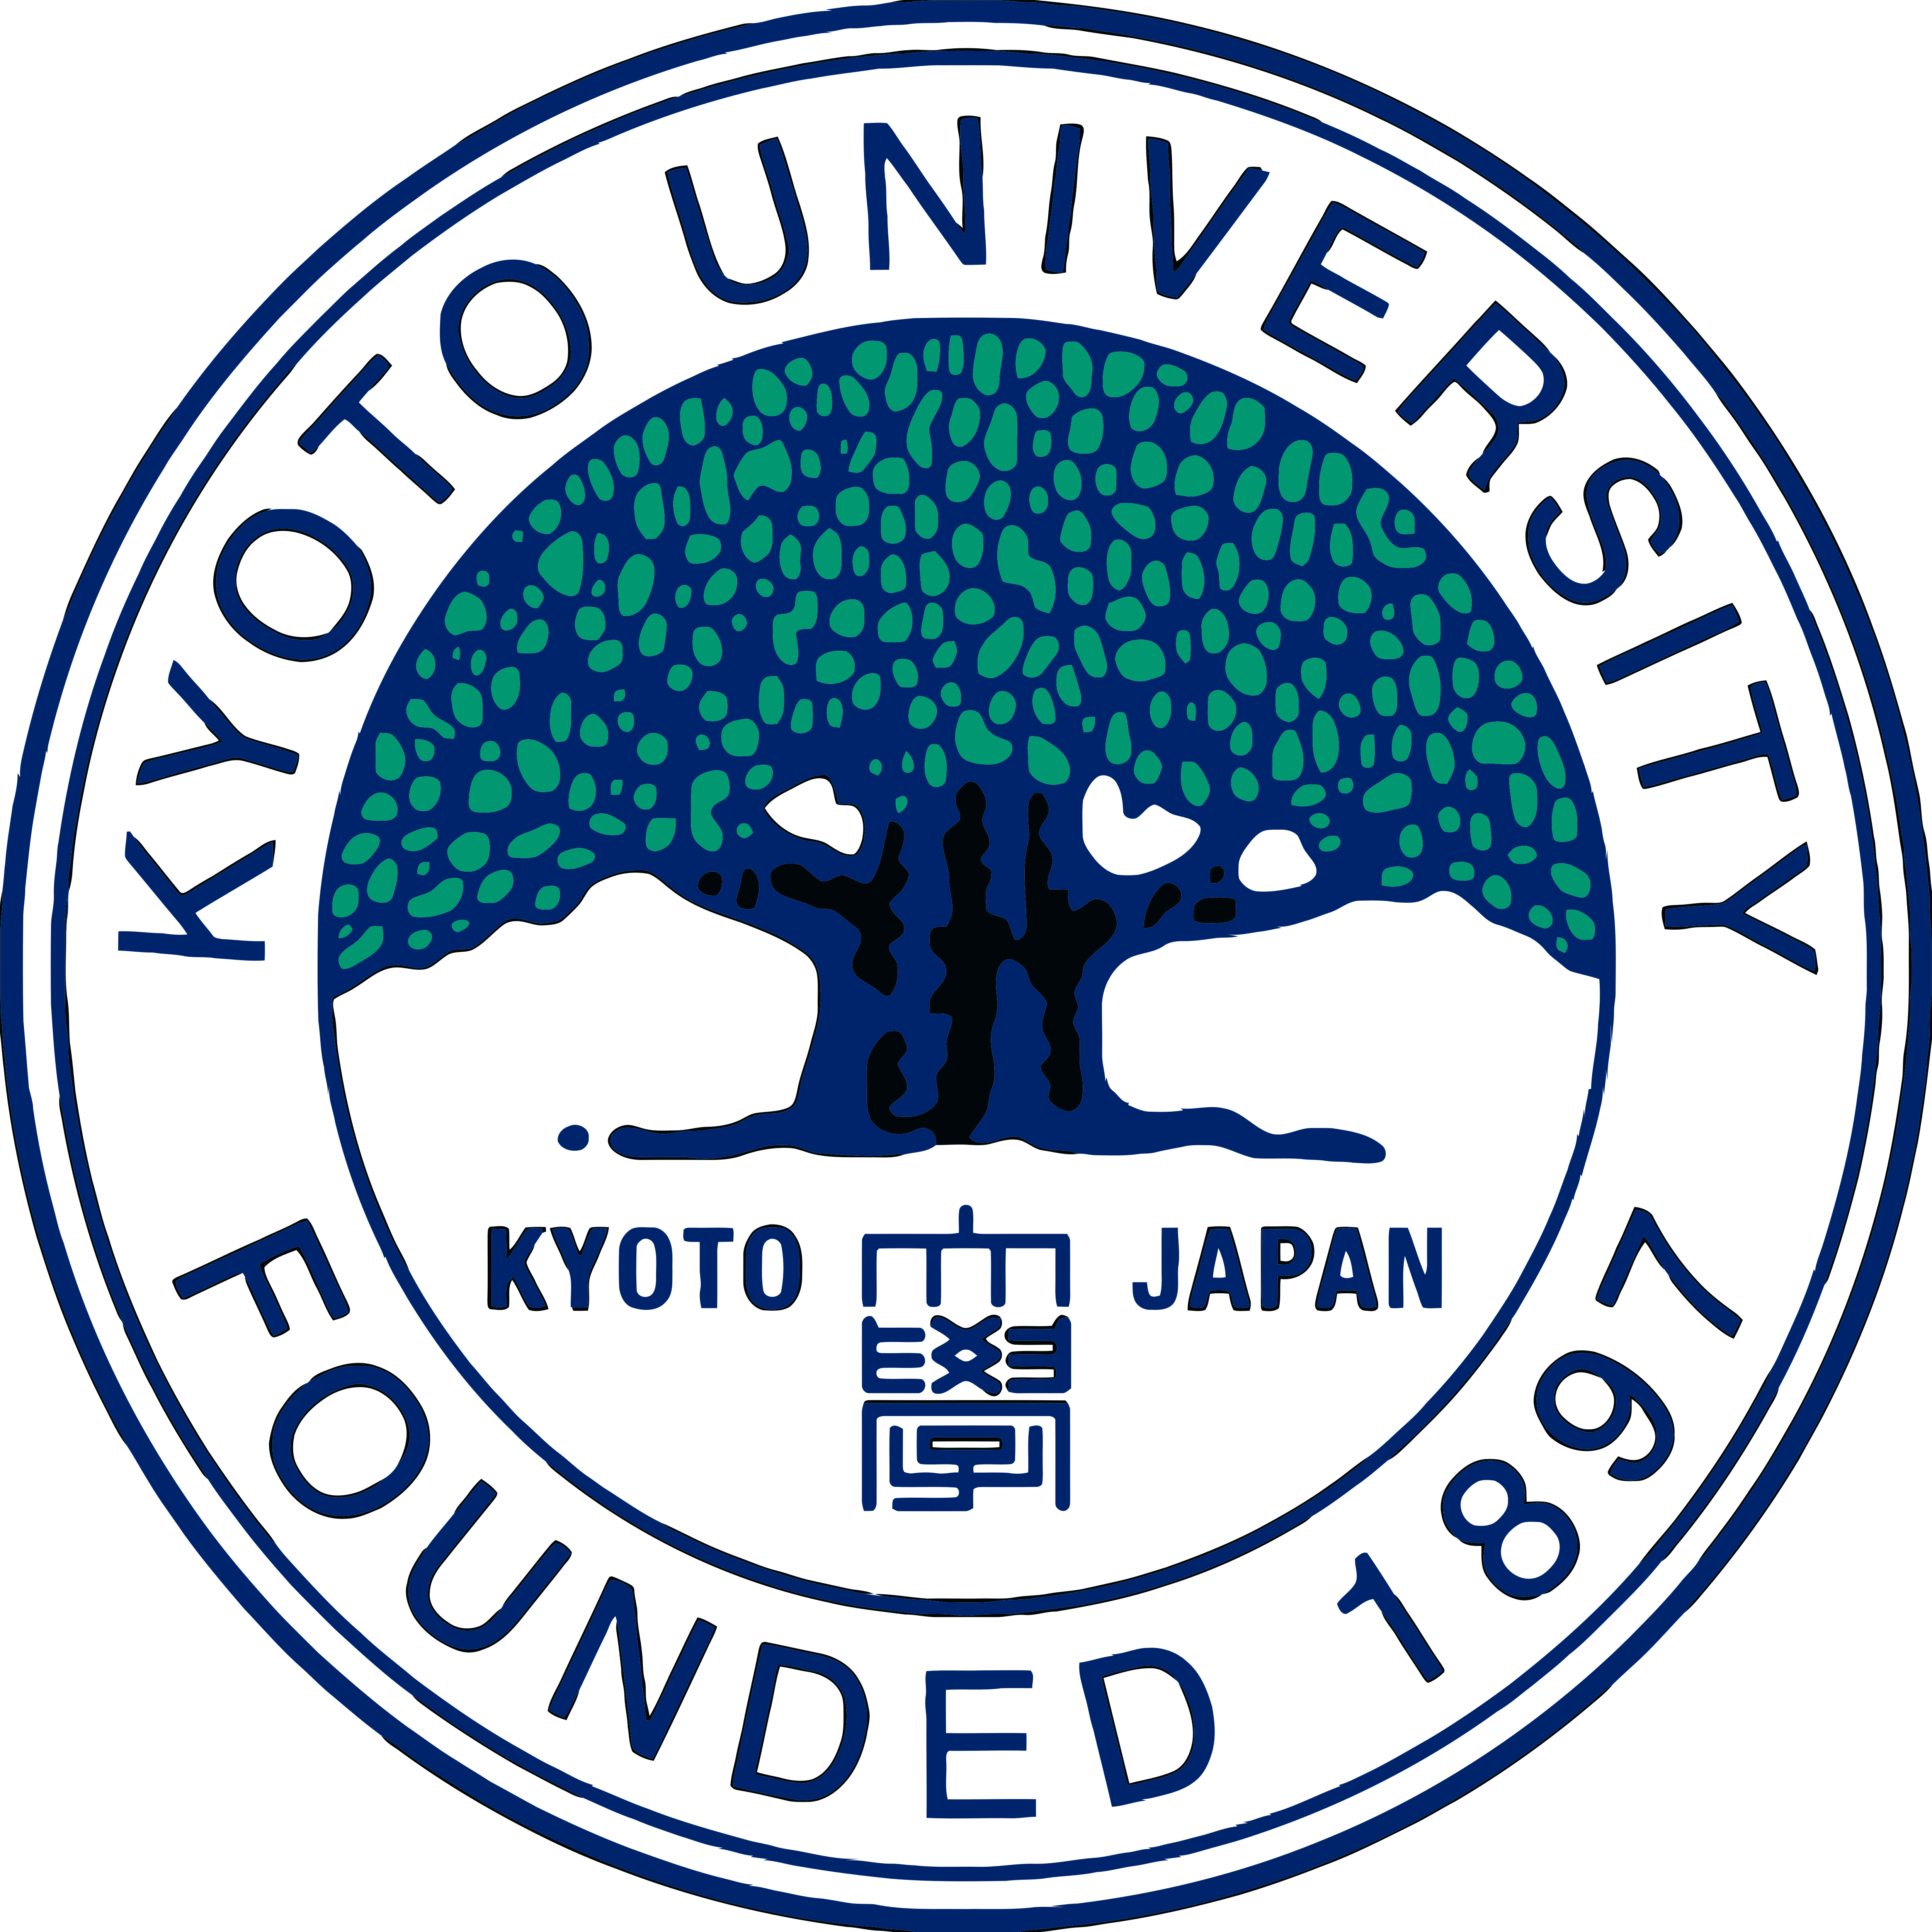 אוניברסיטת קיוטו - הורדת לוגו